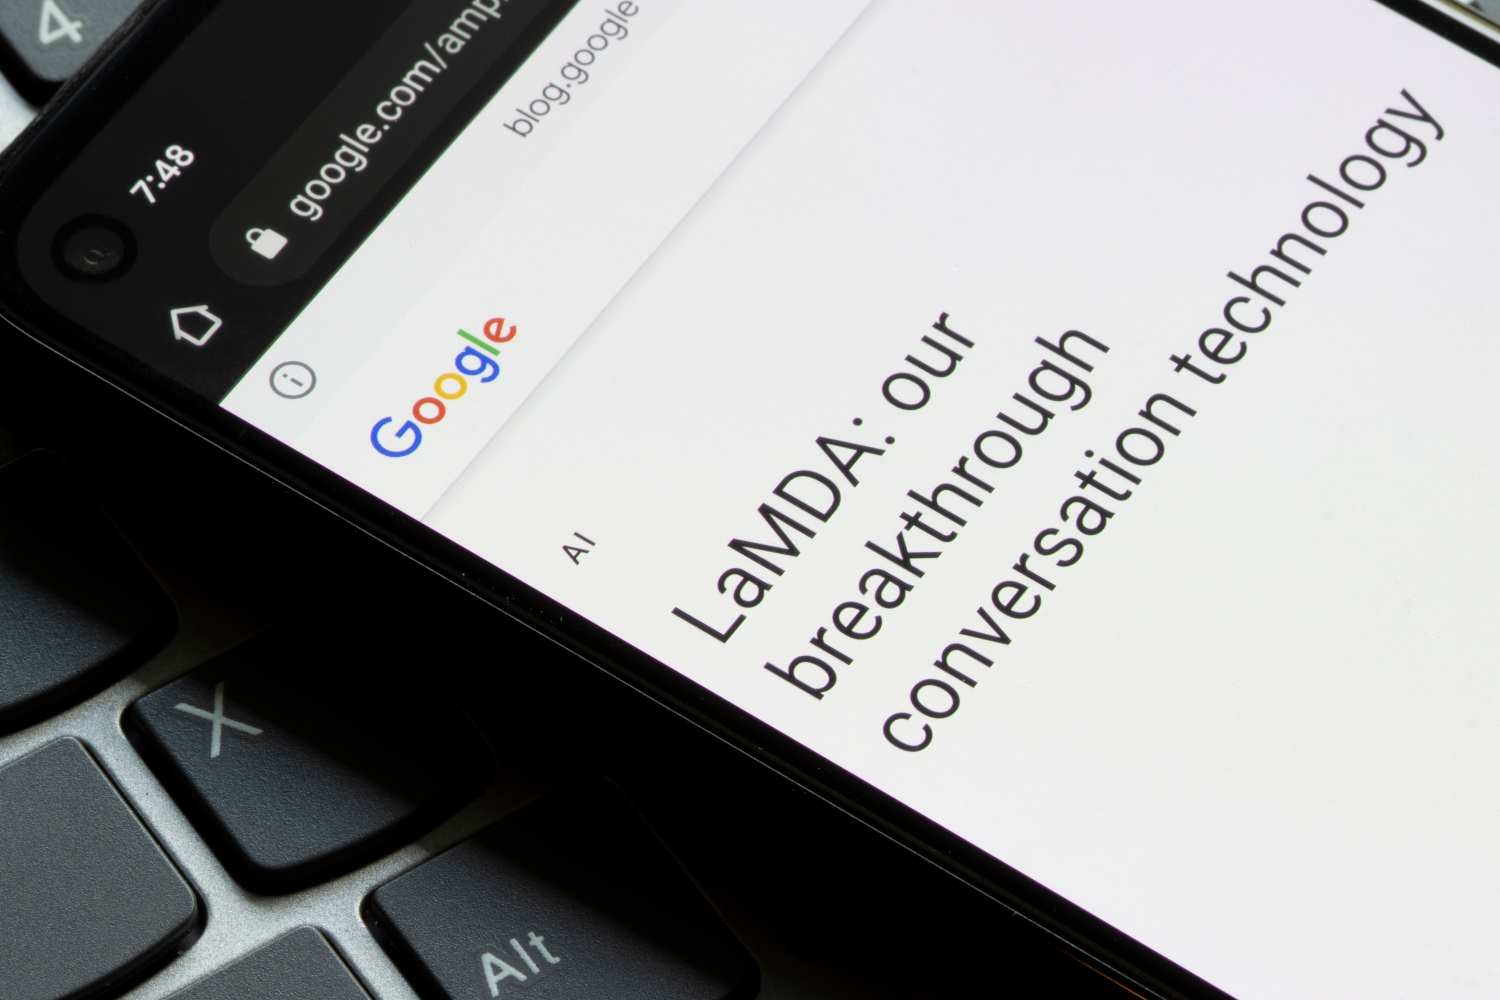 Uma postagem no blog do Google discutindo sua tecnologia de inteligência artificial LaMBDA exibida na tela de um smartphone.